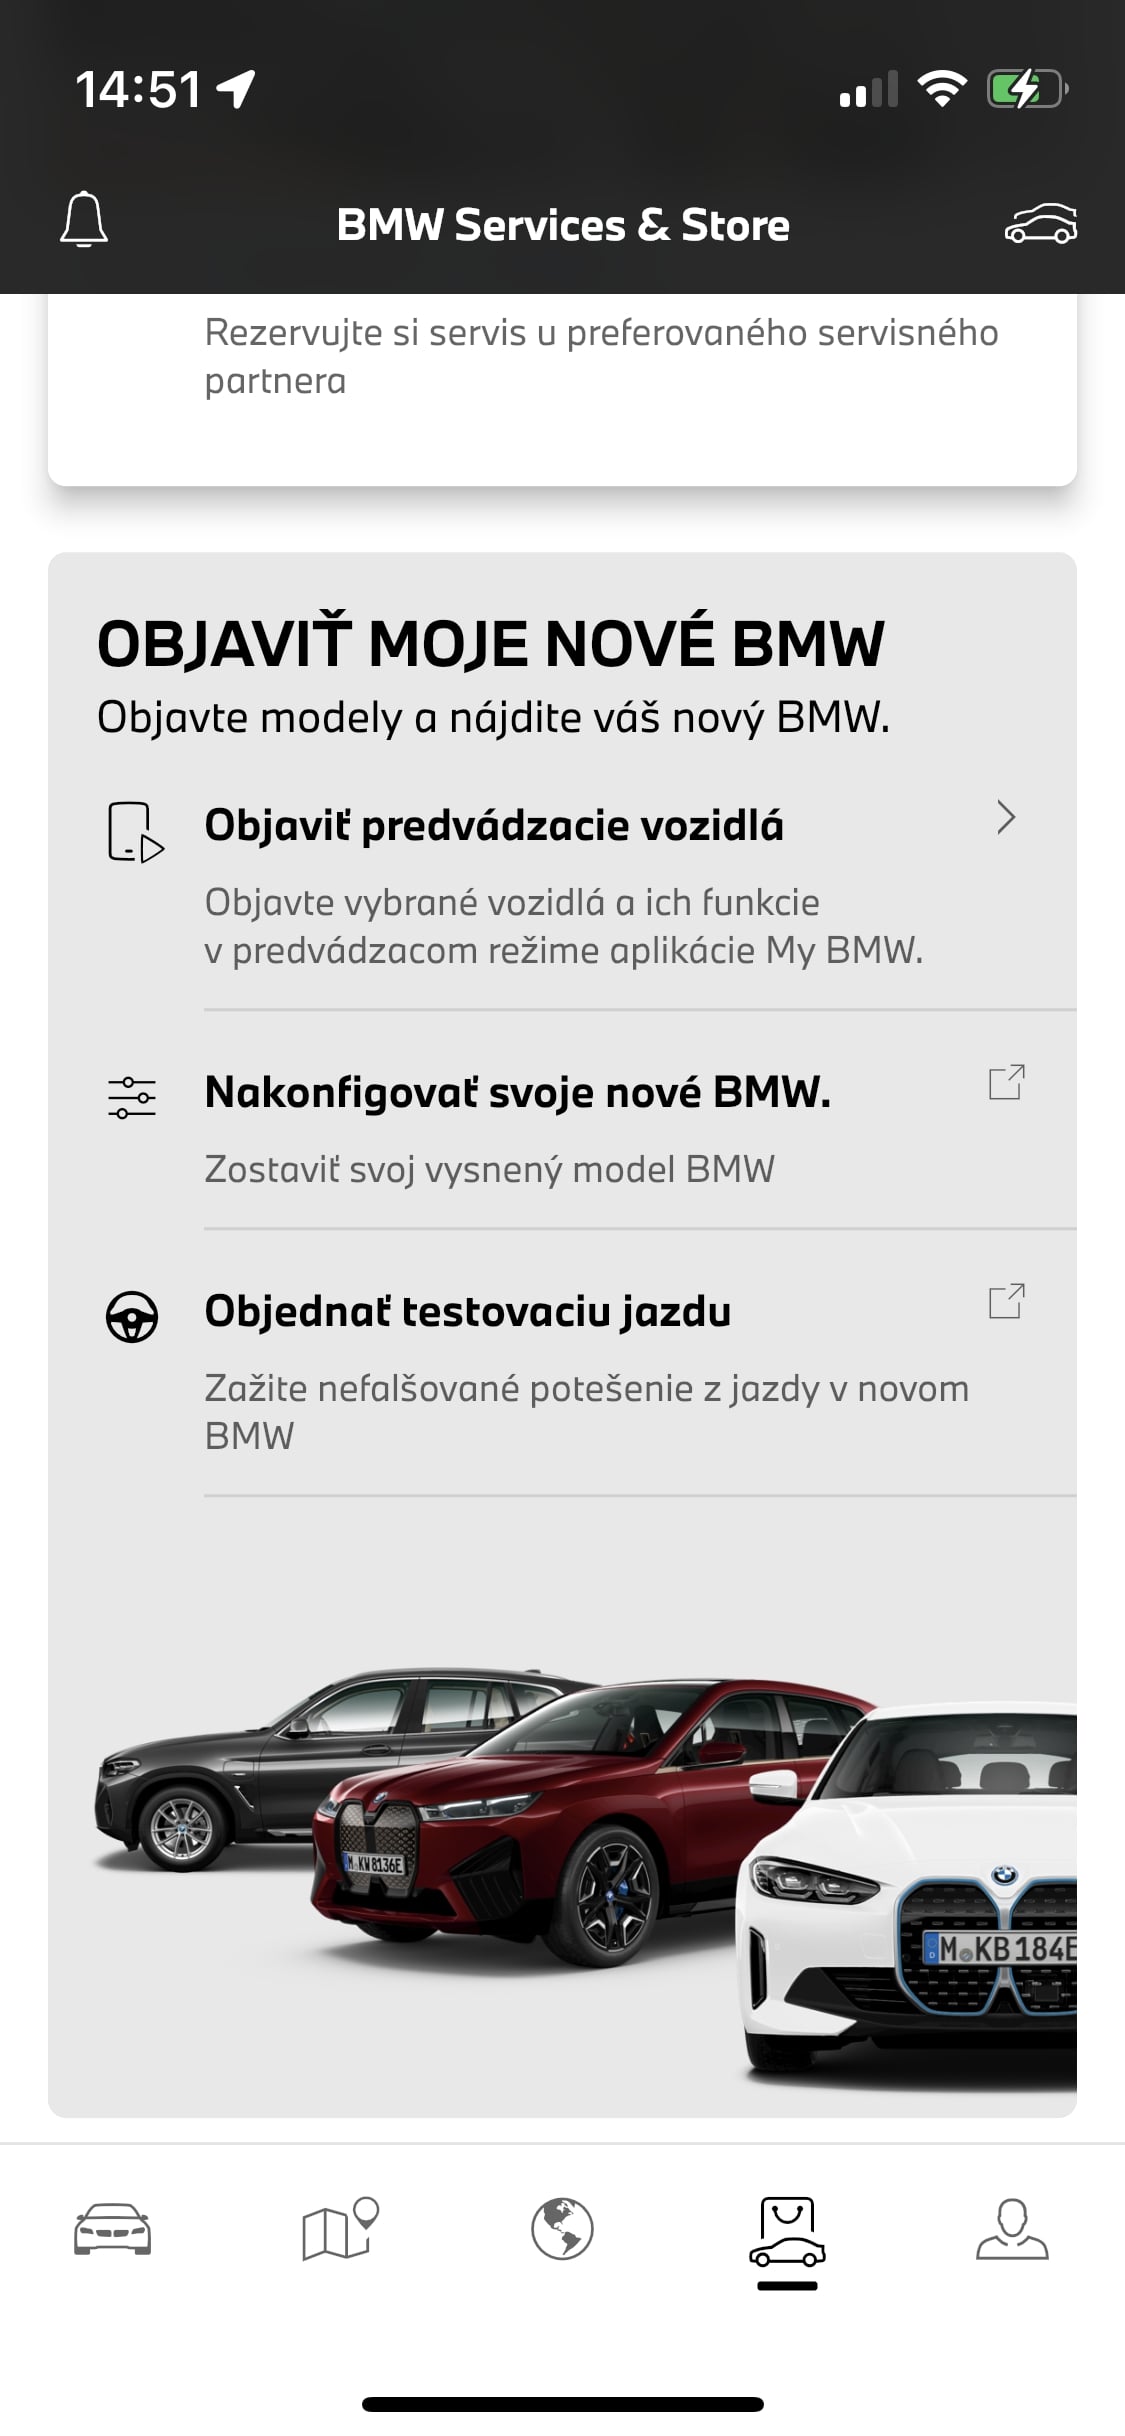 My BMW aplikacia